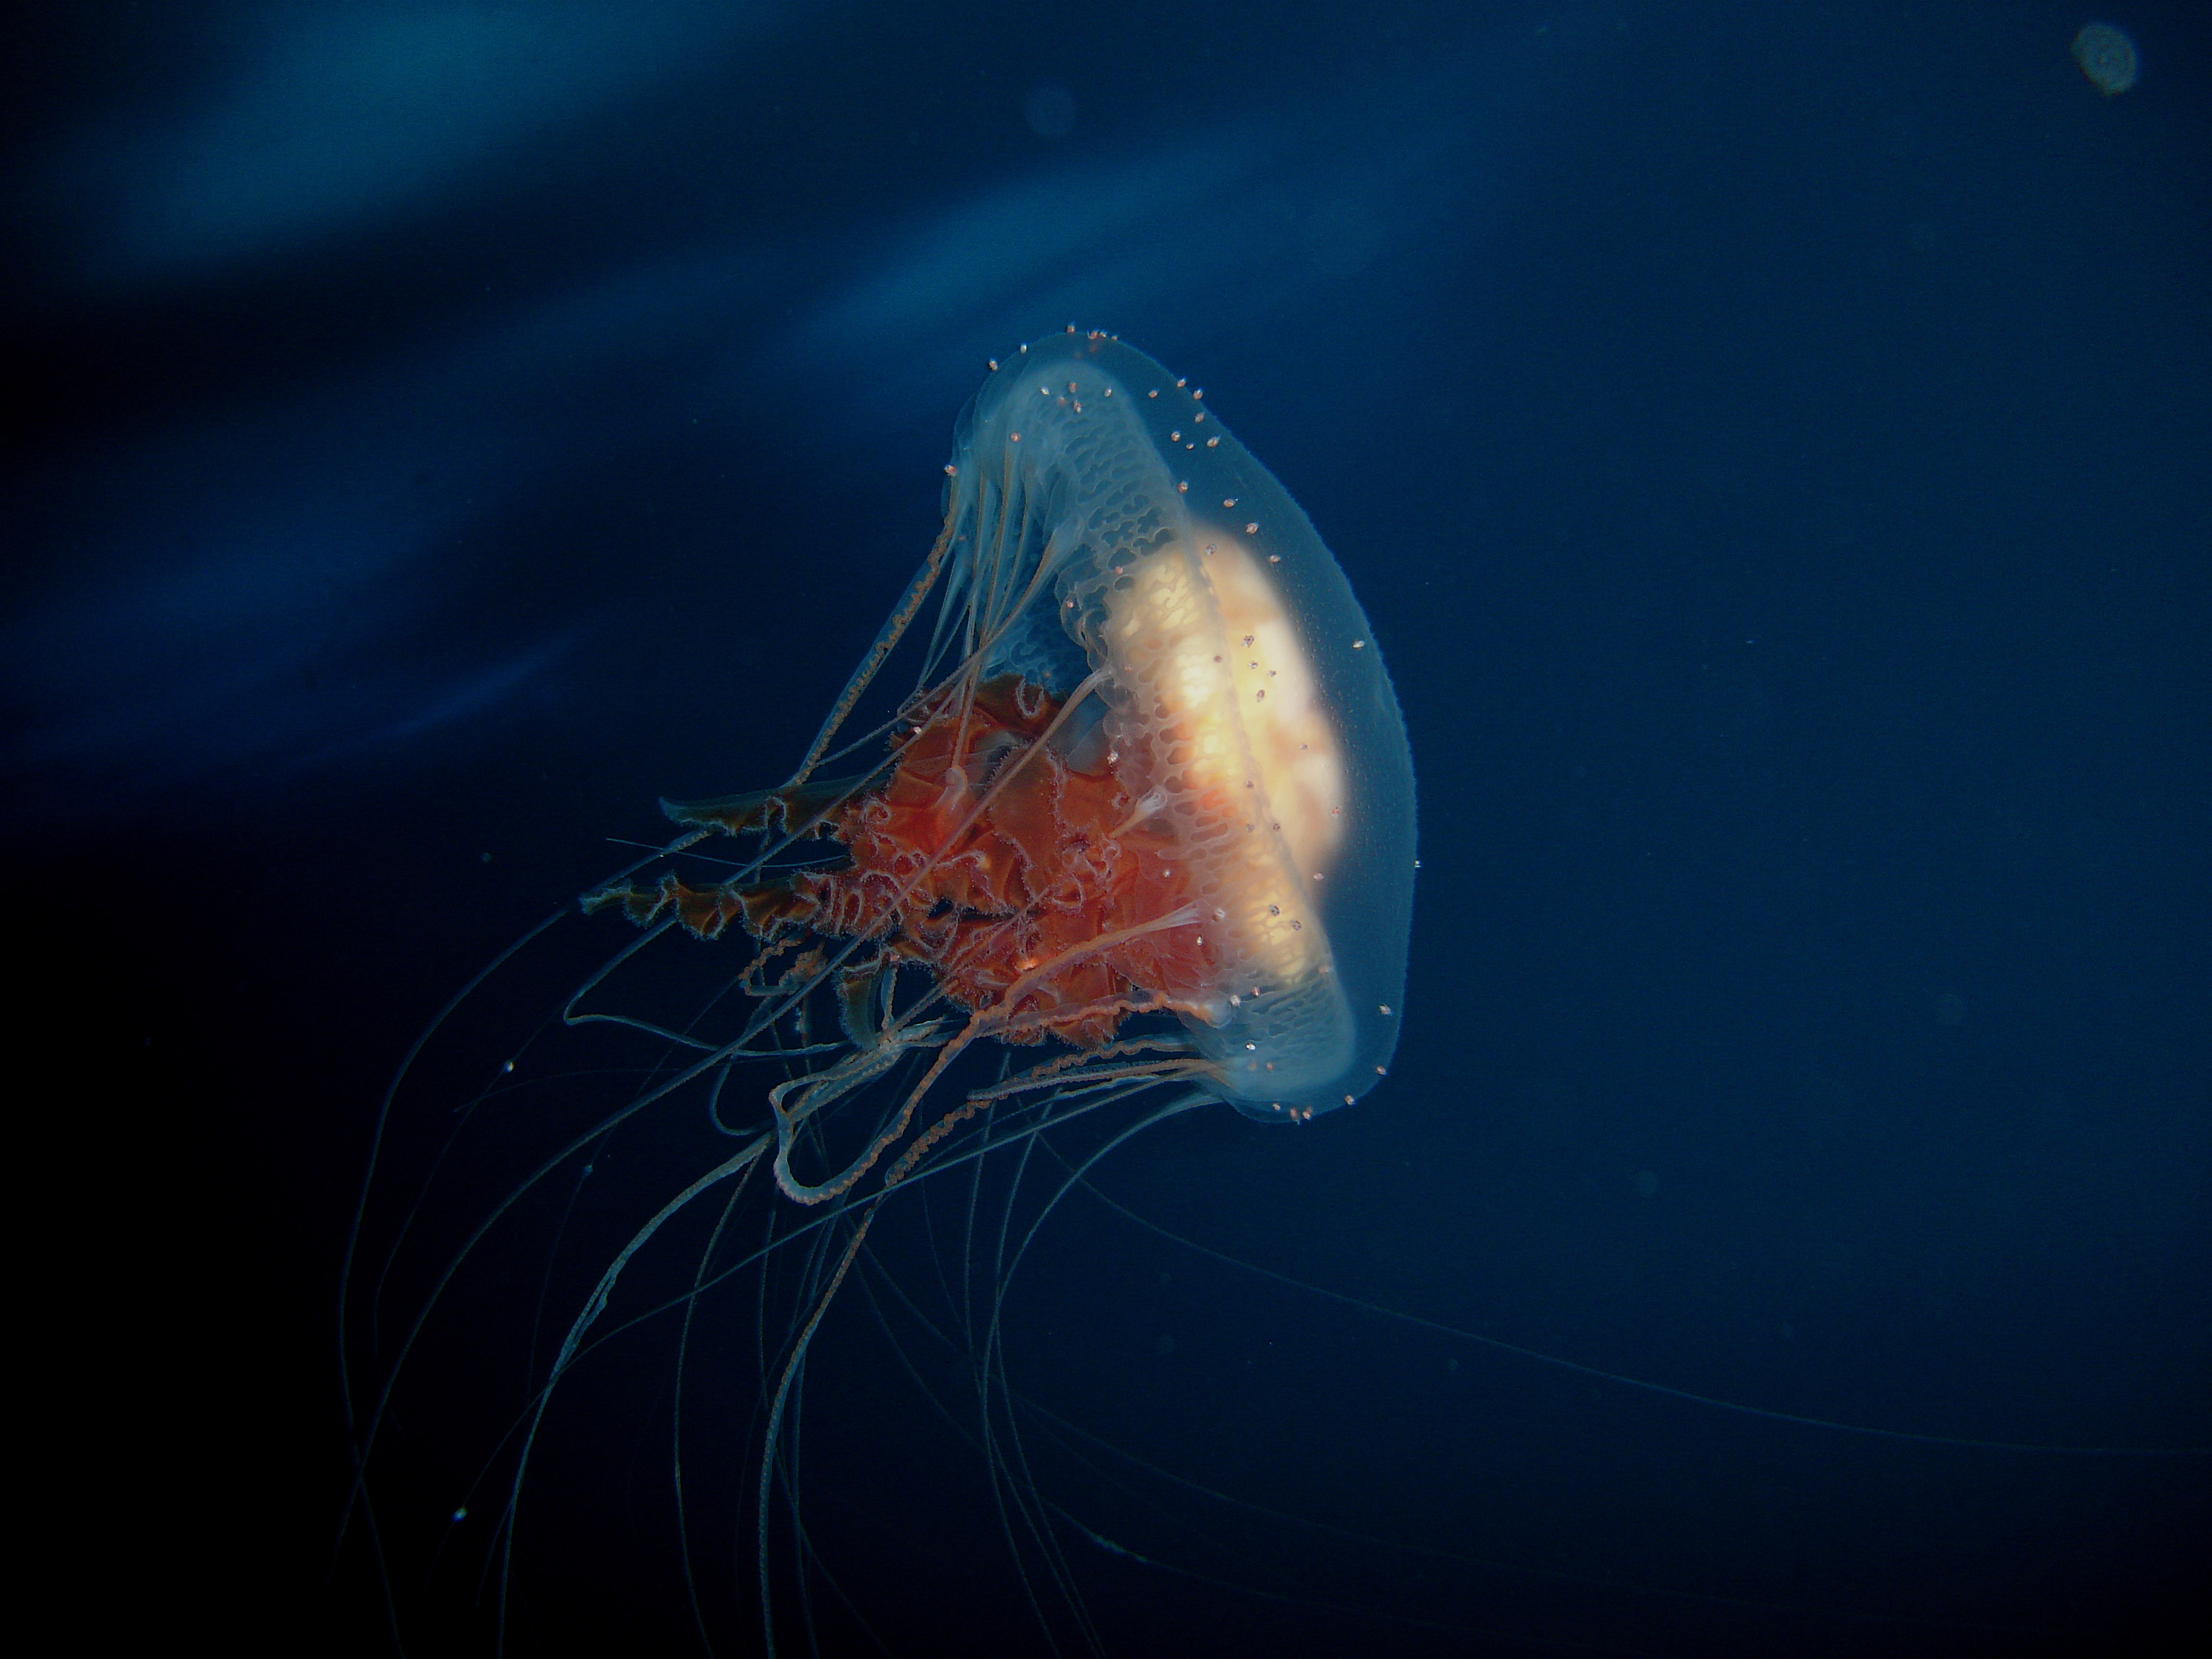 Jellyfish swims through the water.